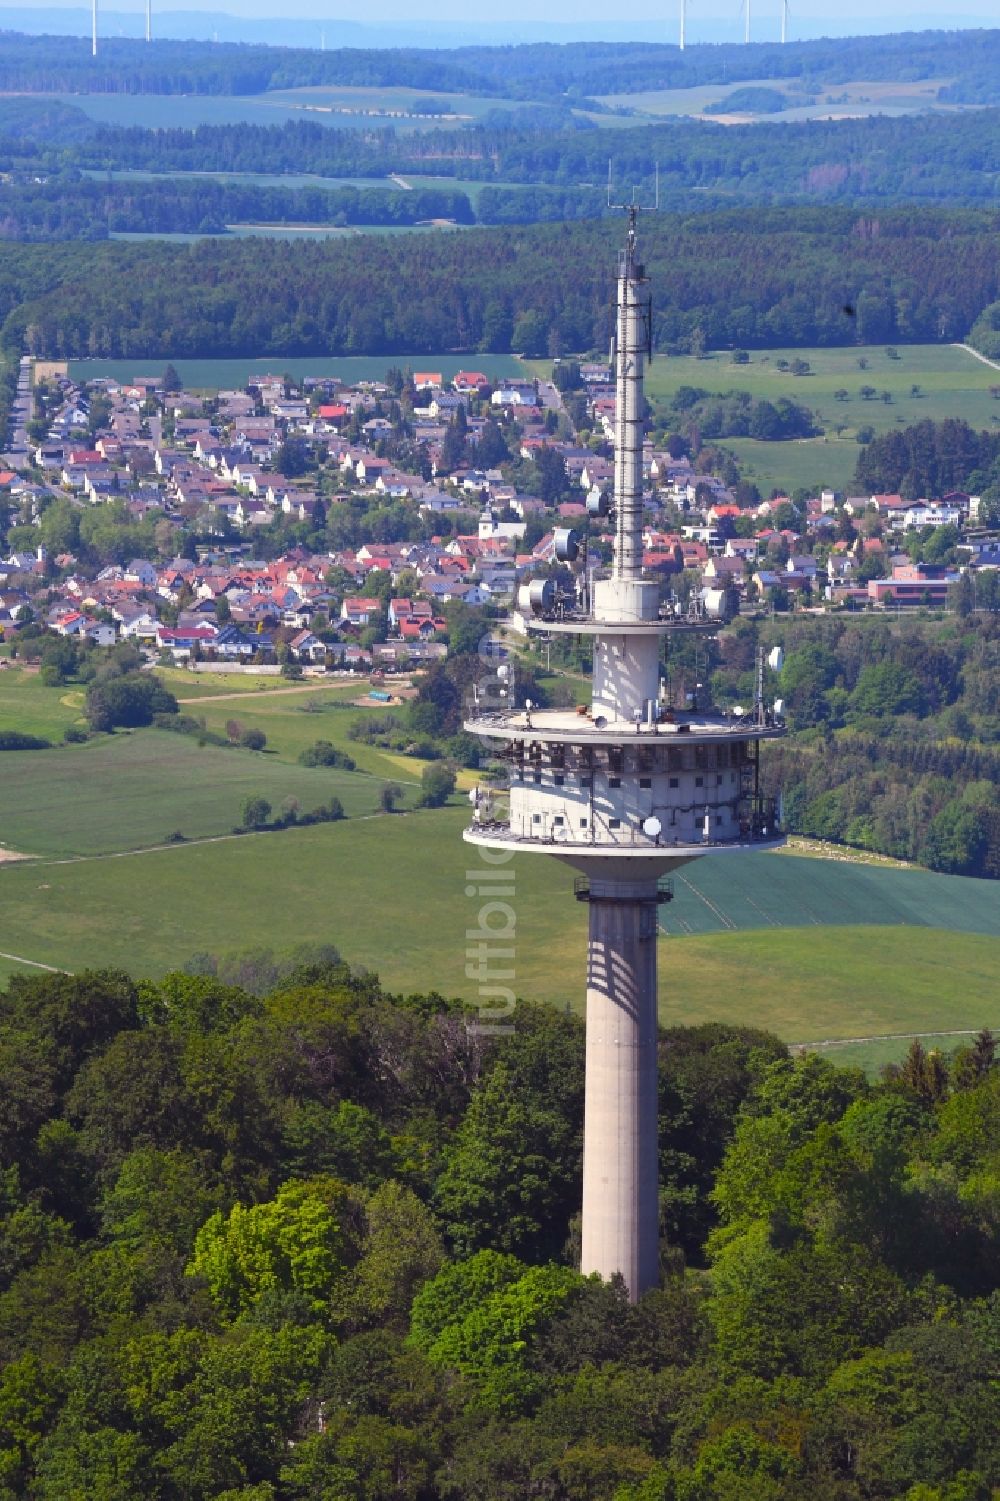 Kelkheim (Taunus) von oben - Fernmeldeturm und Fernsehturm in Kelkheim (Taunus) im Bundesland Hessen, Deutschland